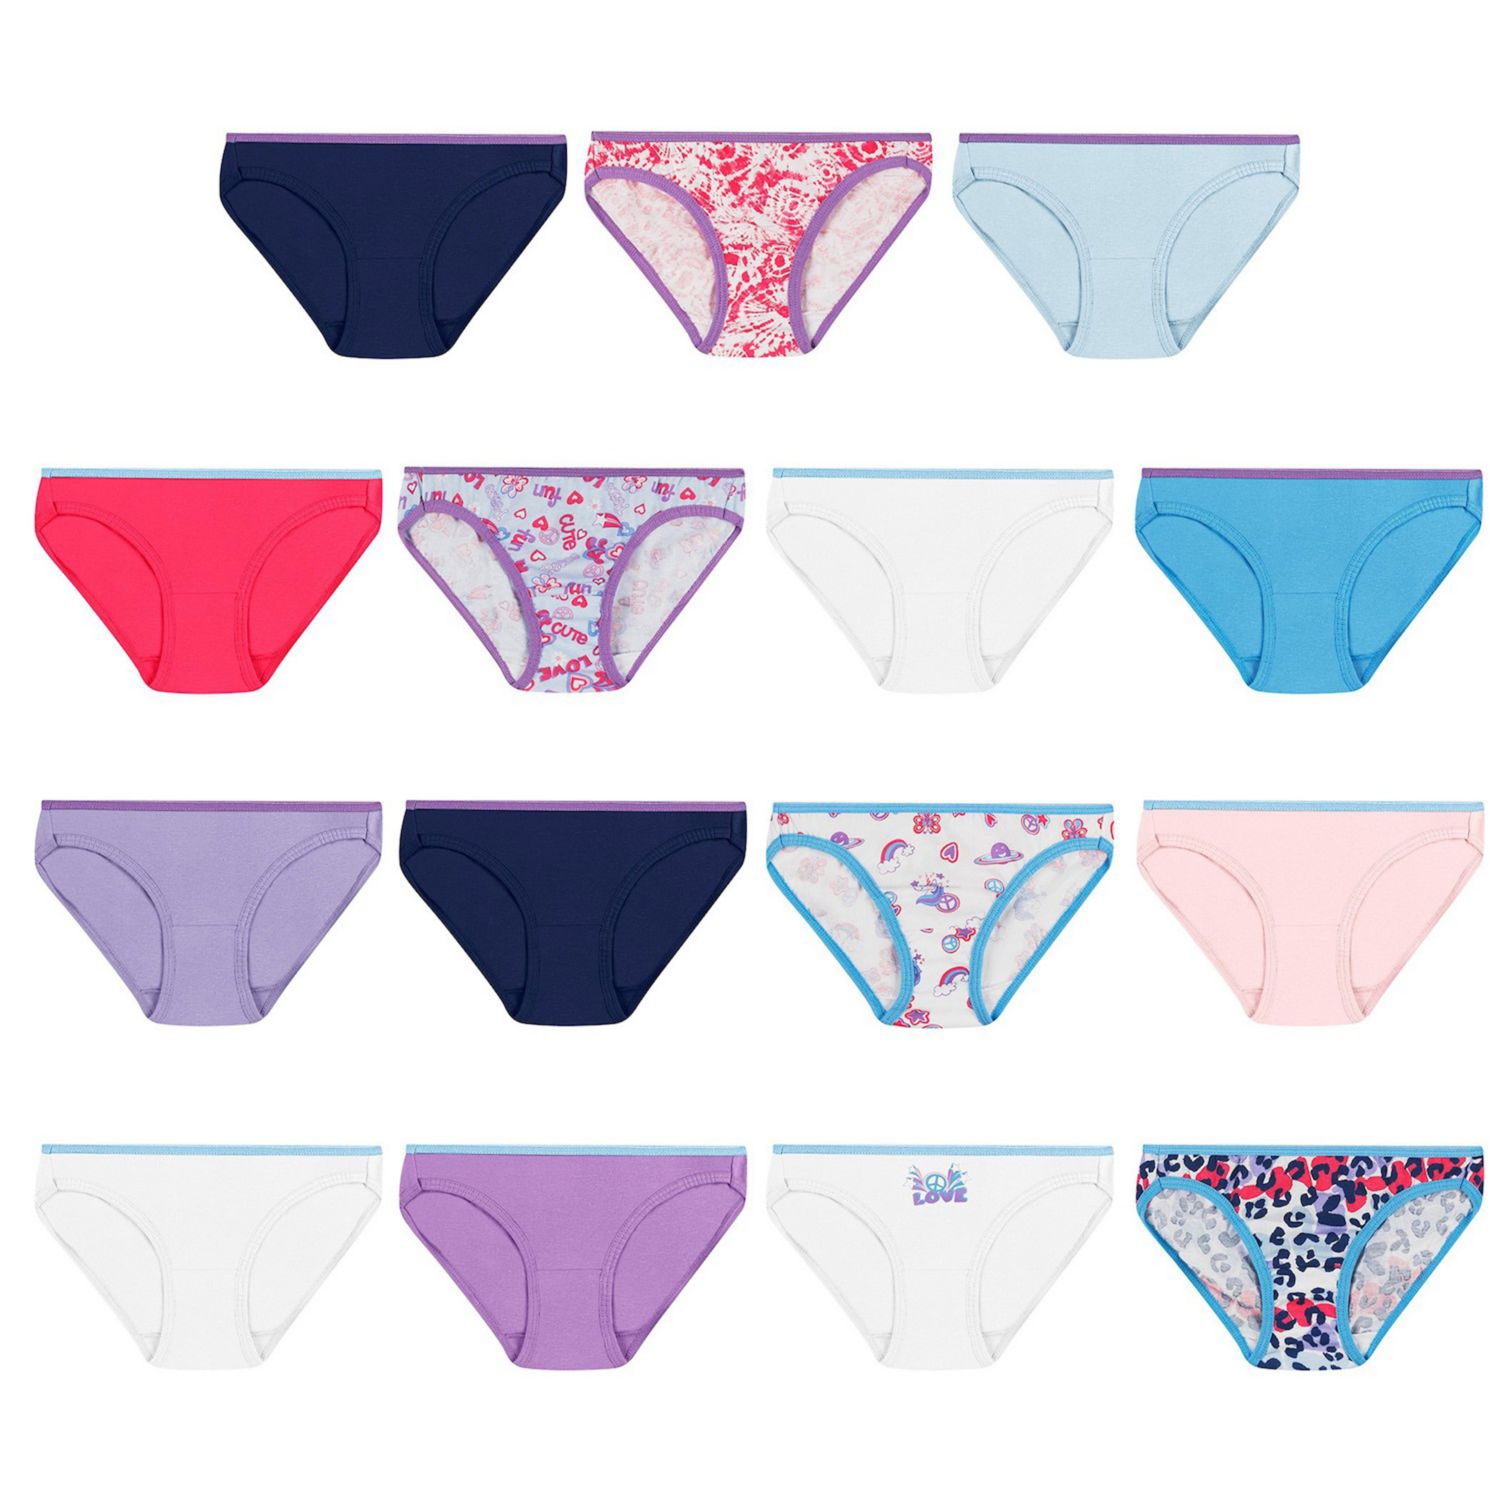 Image for Hanes Girls Bikini Panties 14+1 Bonus Pack at Kohl's.